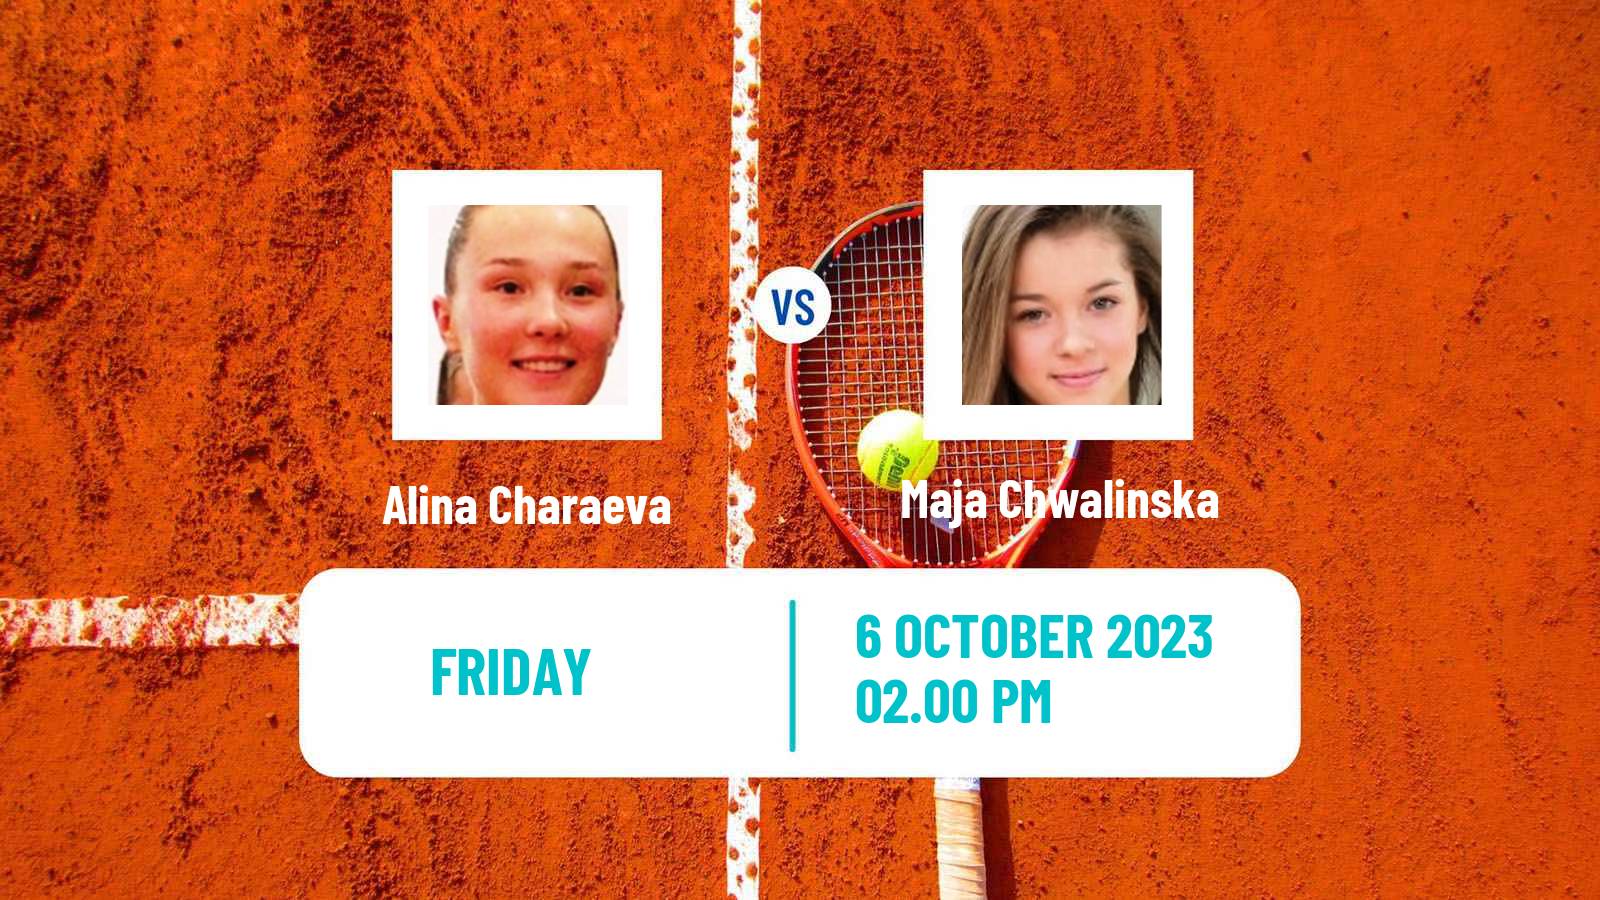 Tennis ITF W25 Baza Women Alina Charaeva - Maja Chwalinska